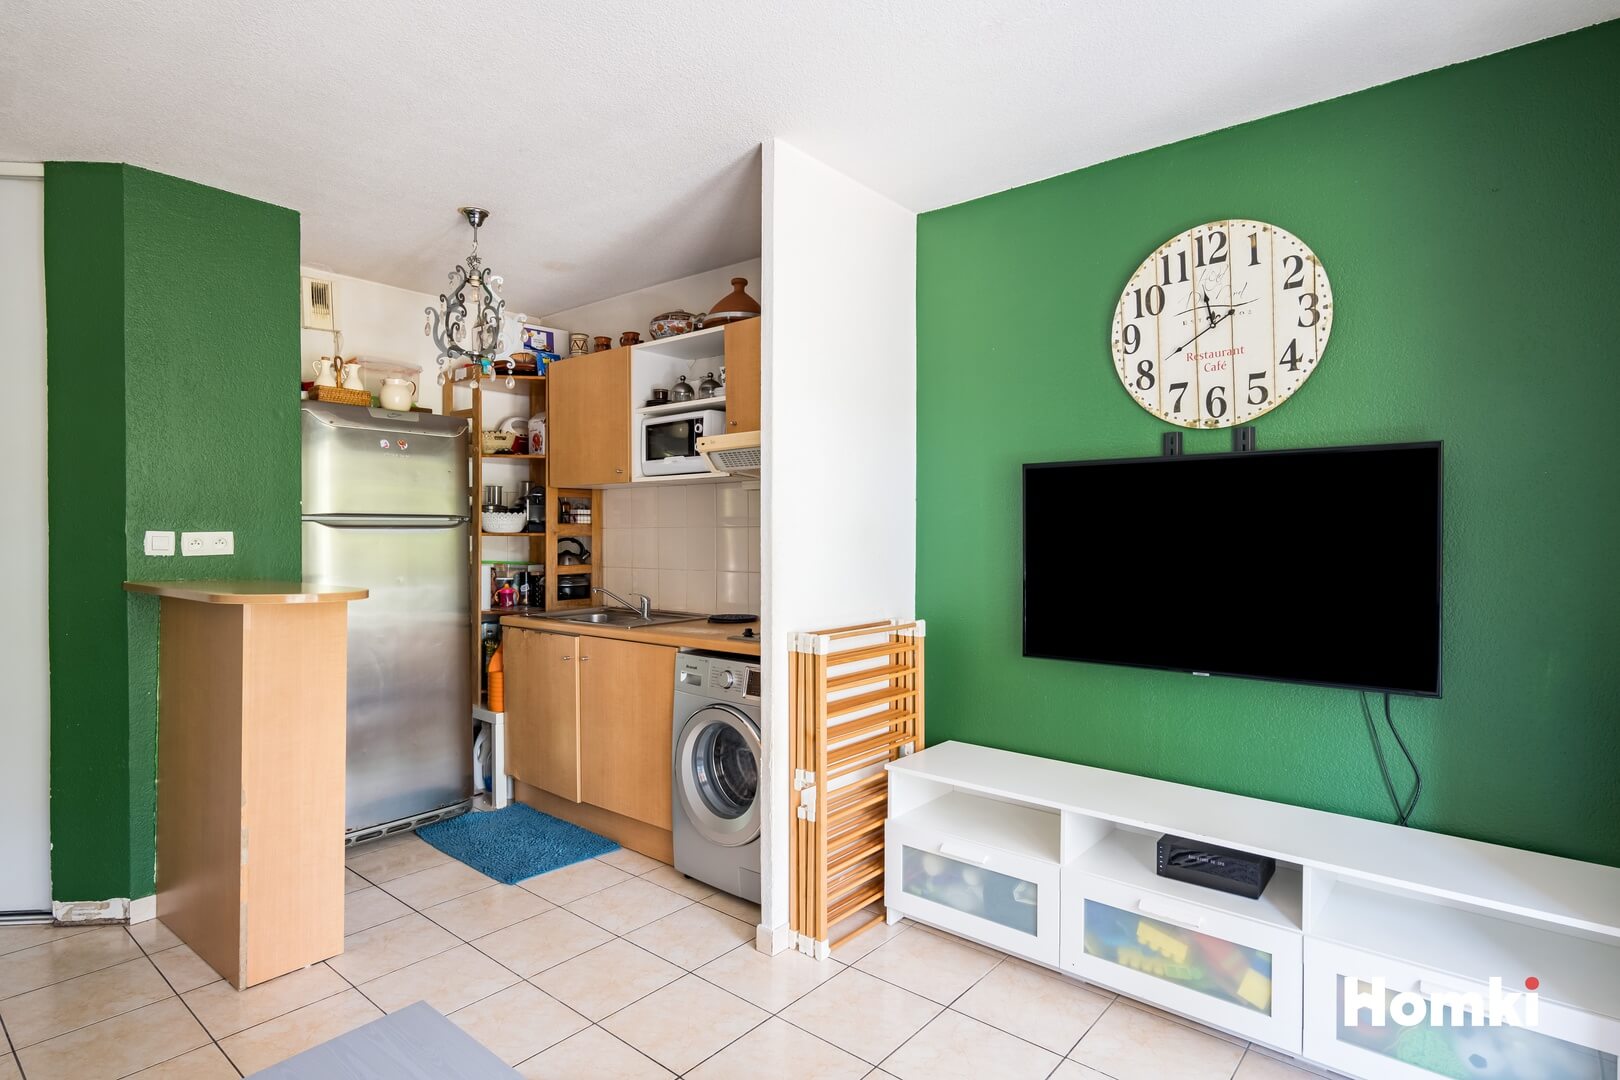 Homki - Vente Appartement  de 44.0 m² à Montpellier 34080